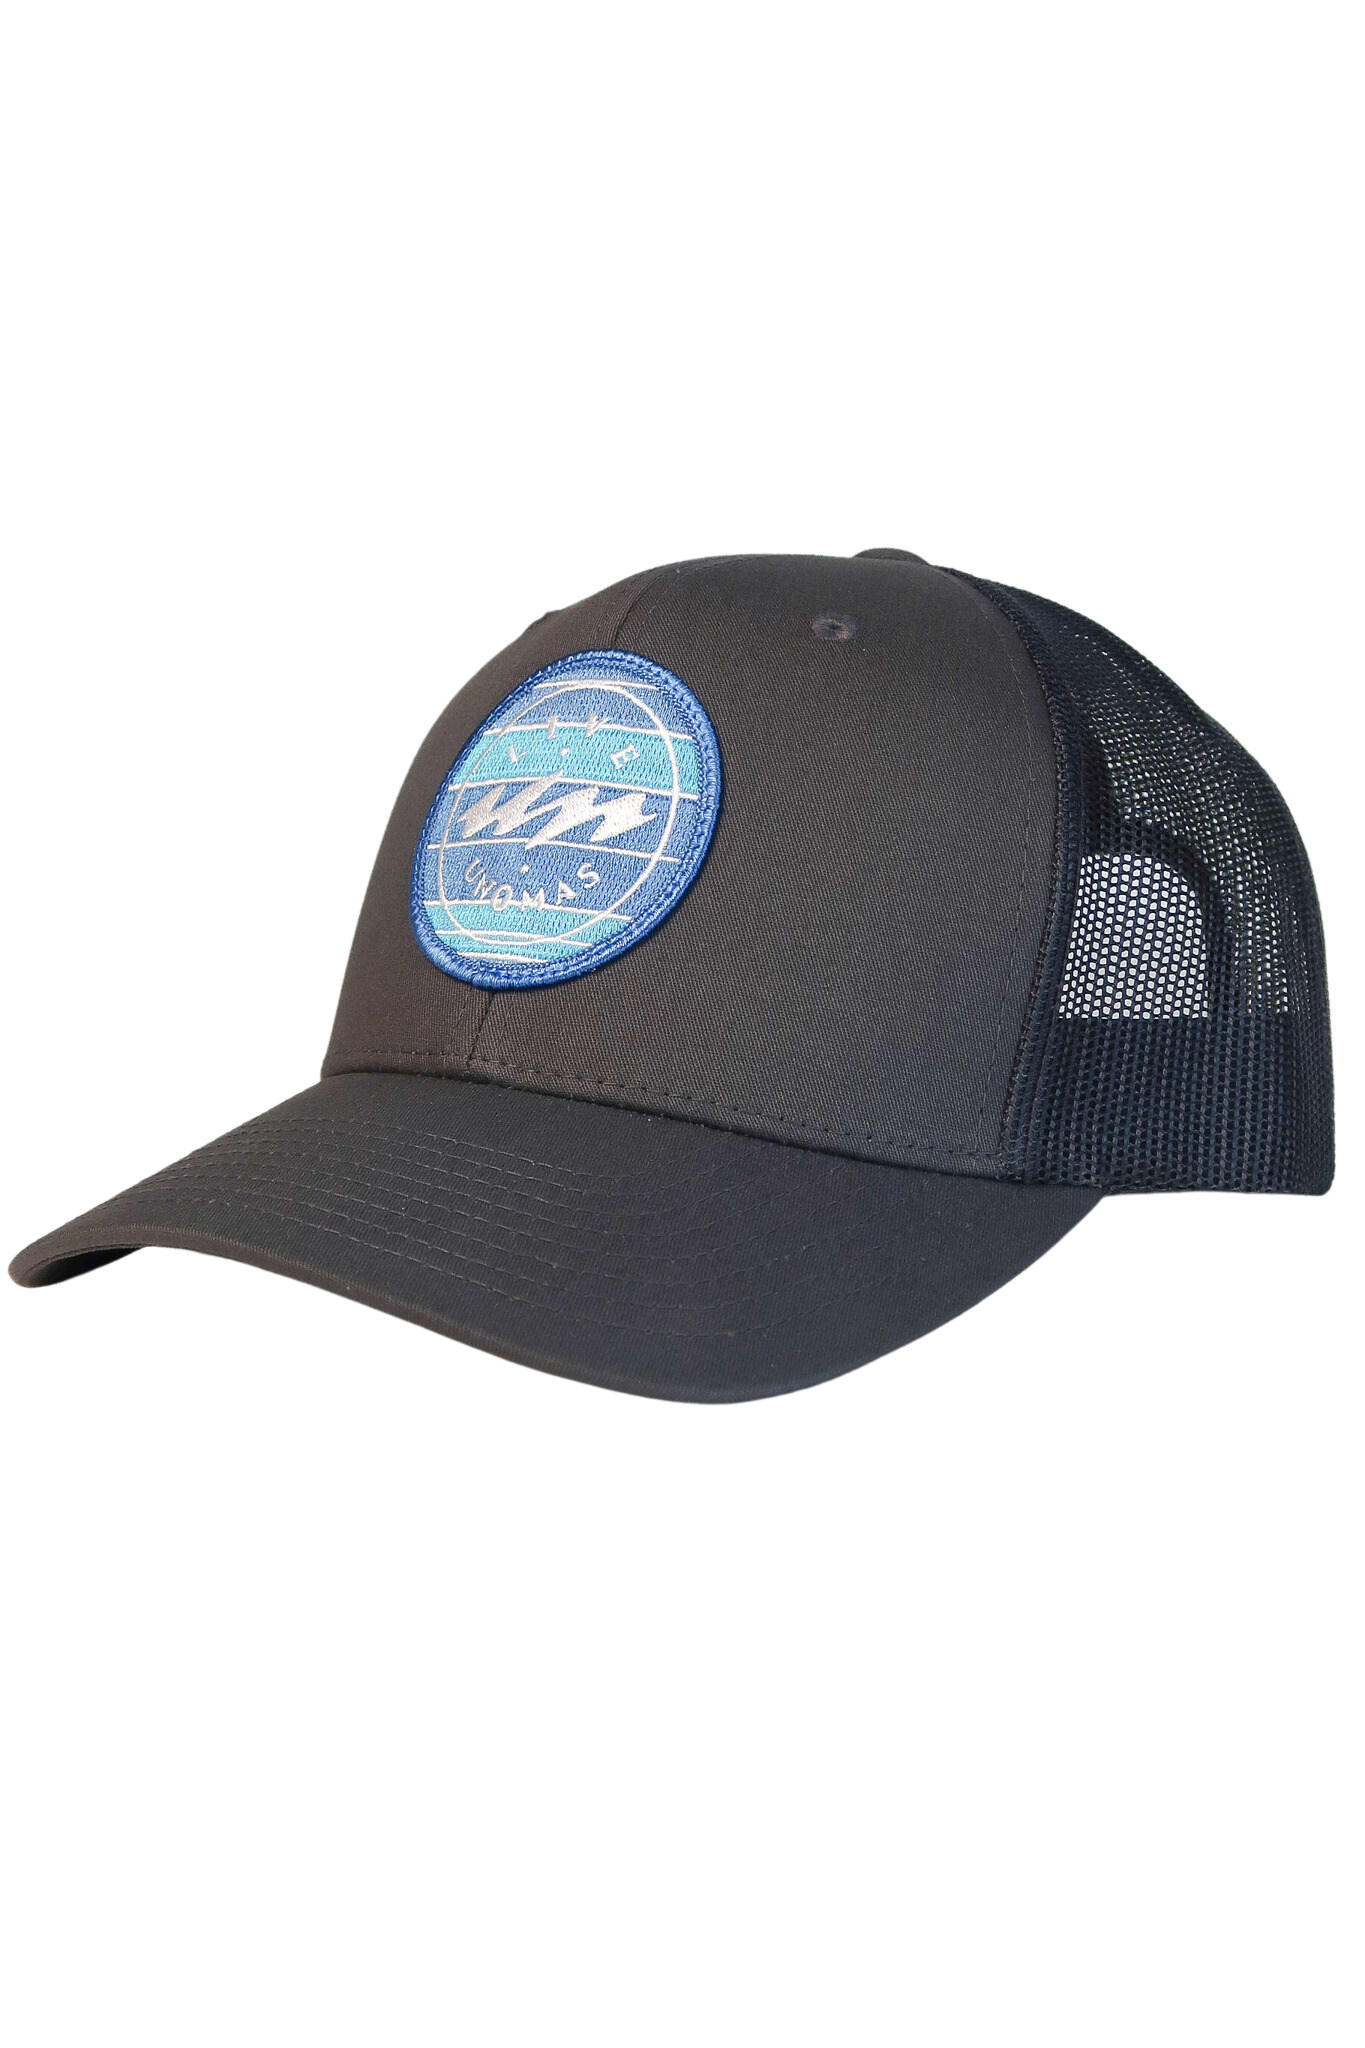 Uno Mas Shiplap Trucker Hat